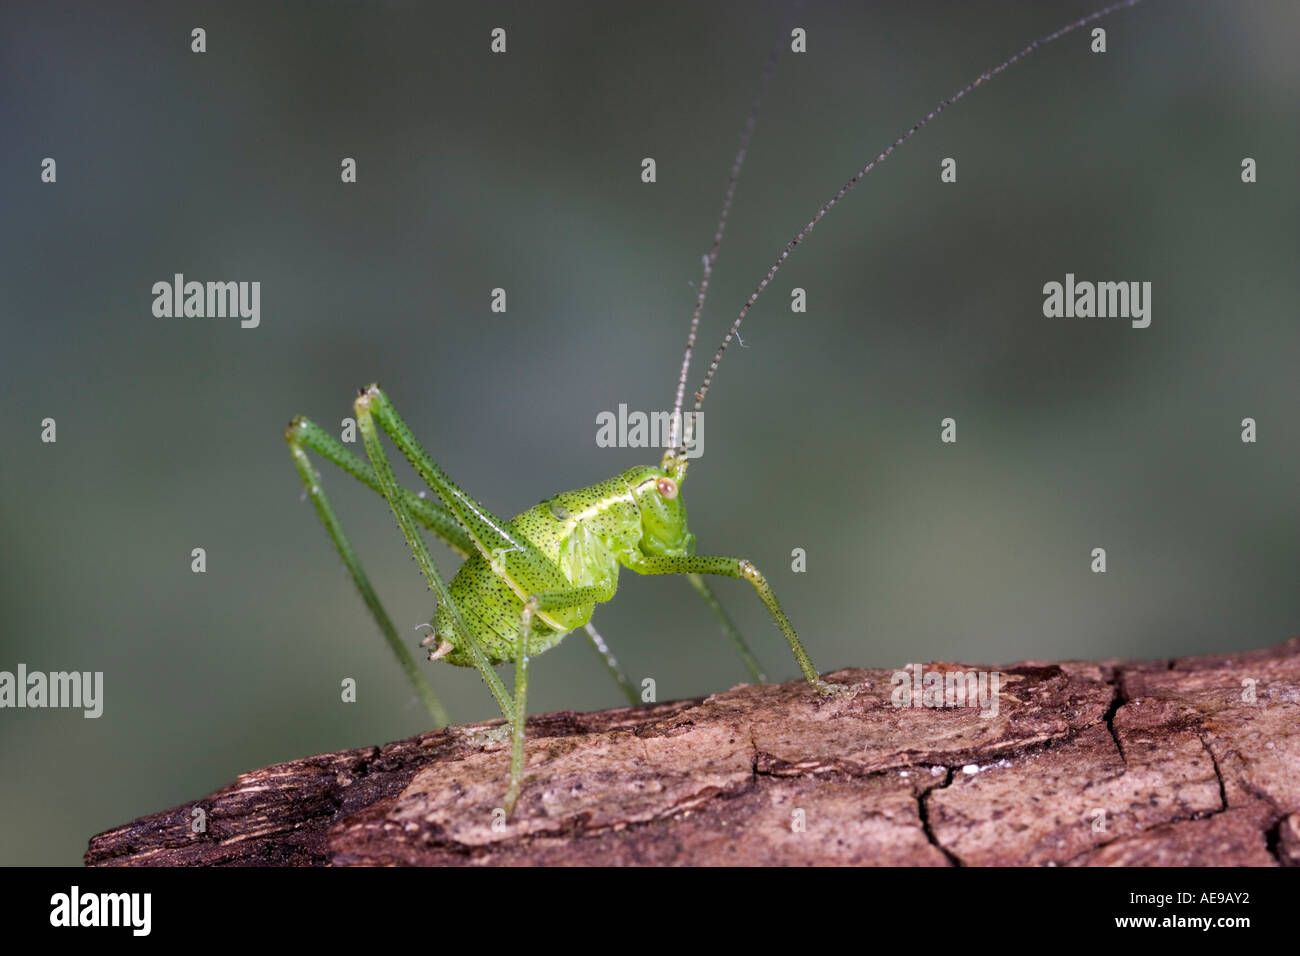 Boccola verde cricket sul registro con fuori fuoco od backgrouns che mostra i contrassegni e dettaglio potton bedfordshire Foto Stock